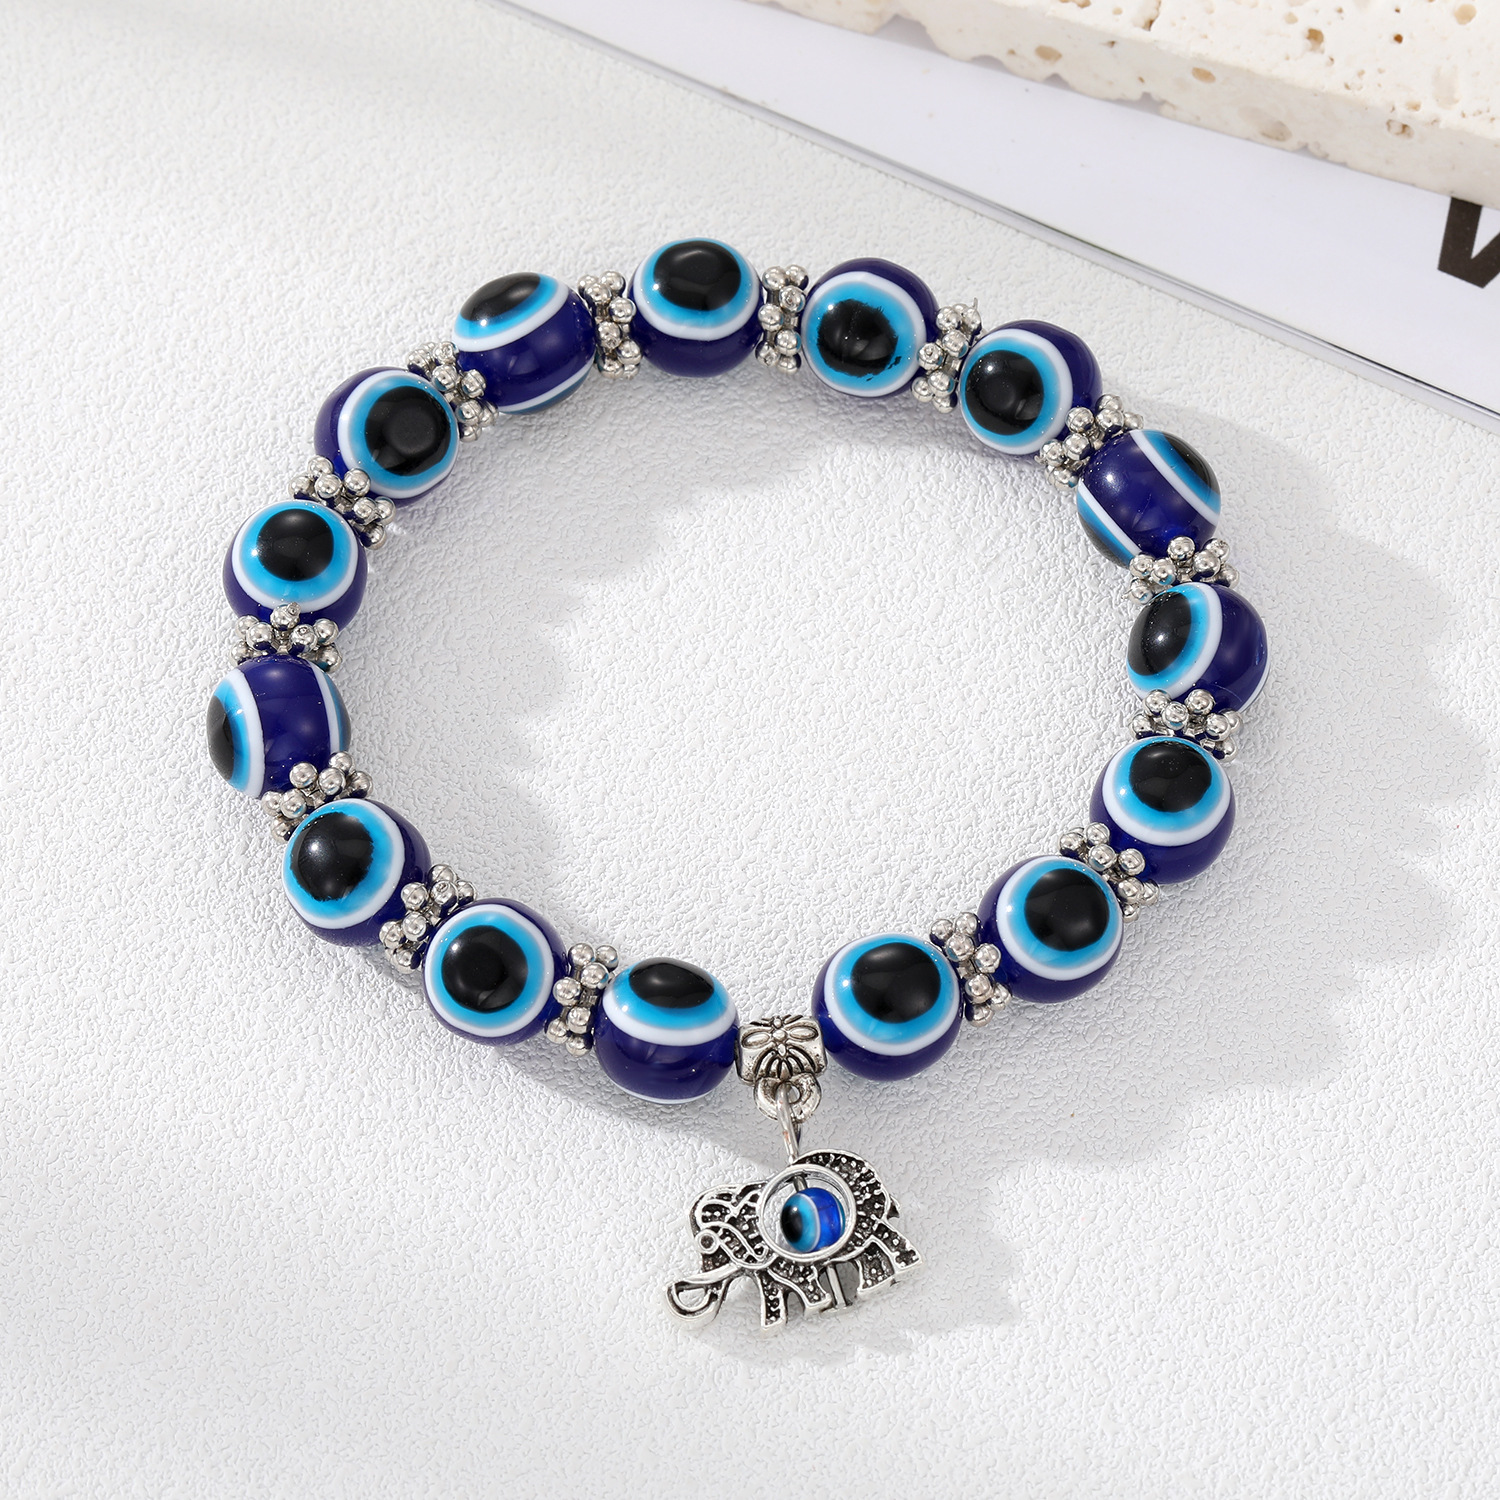 3:Blue elephant bracelet with large beads